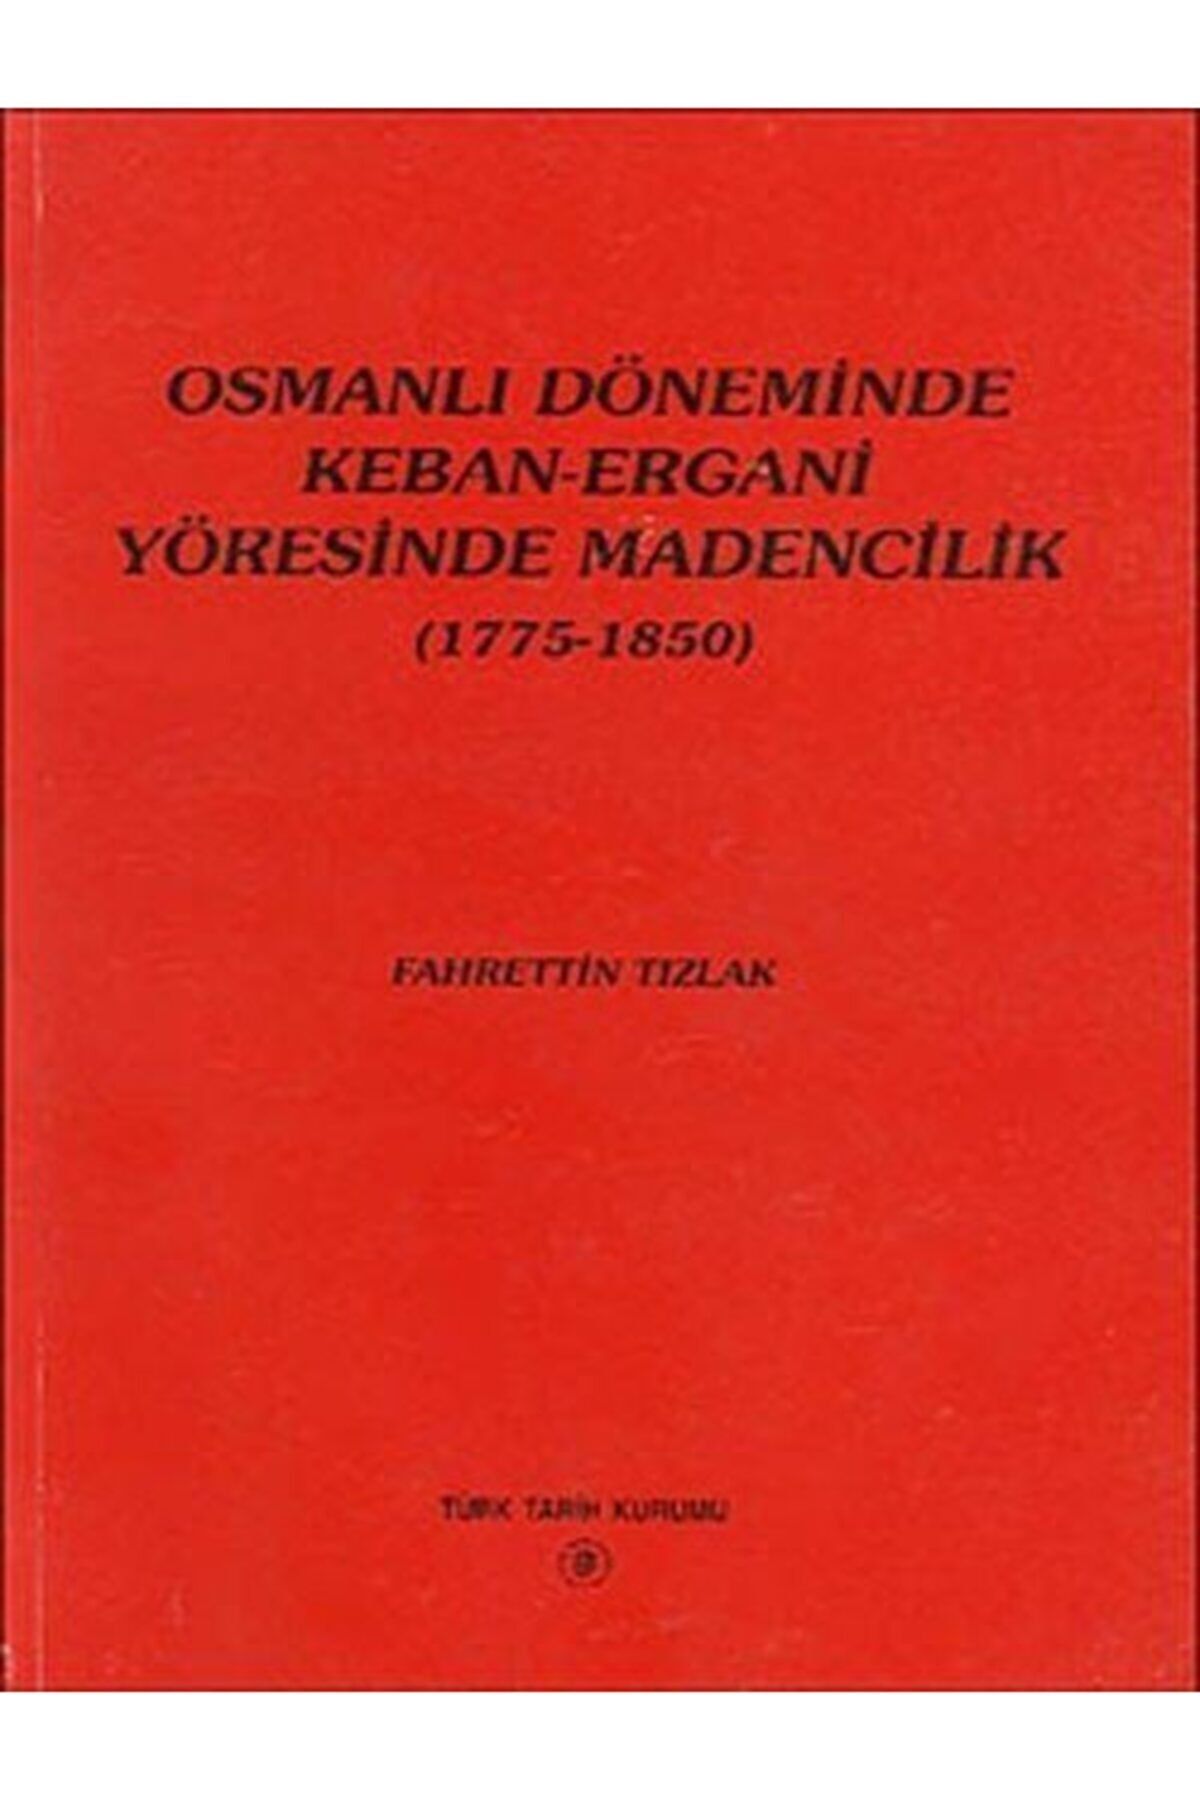 Türk Tarih Kurumu Yayınları Osmanlı Döneminde Keban-ergani Yöresinde Madencilik (1775-1850)